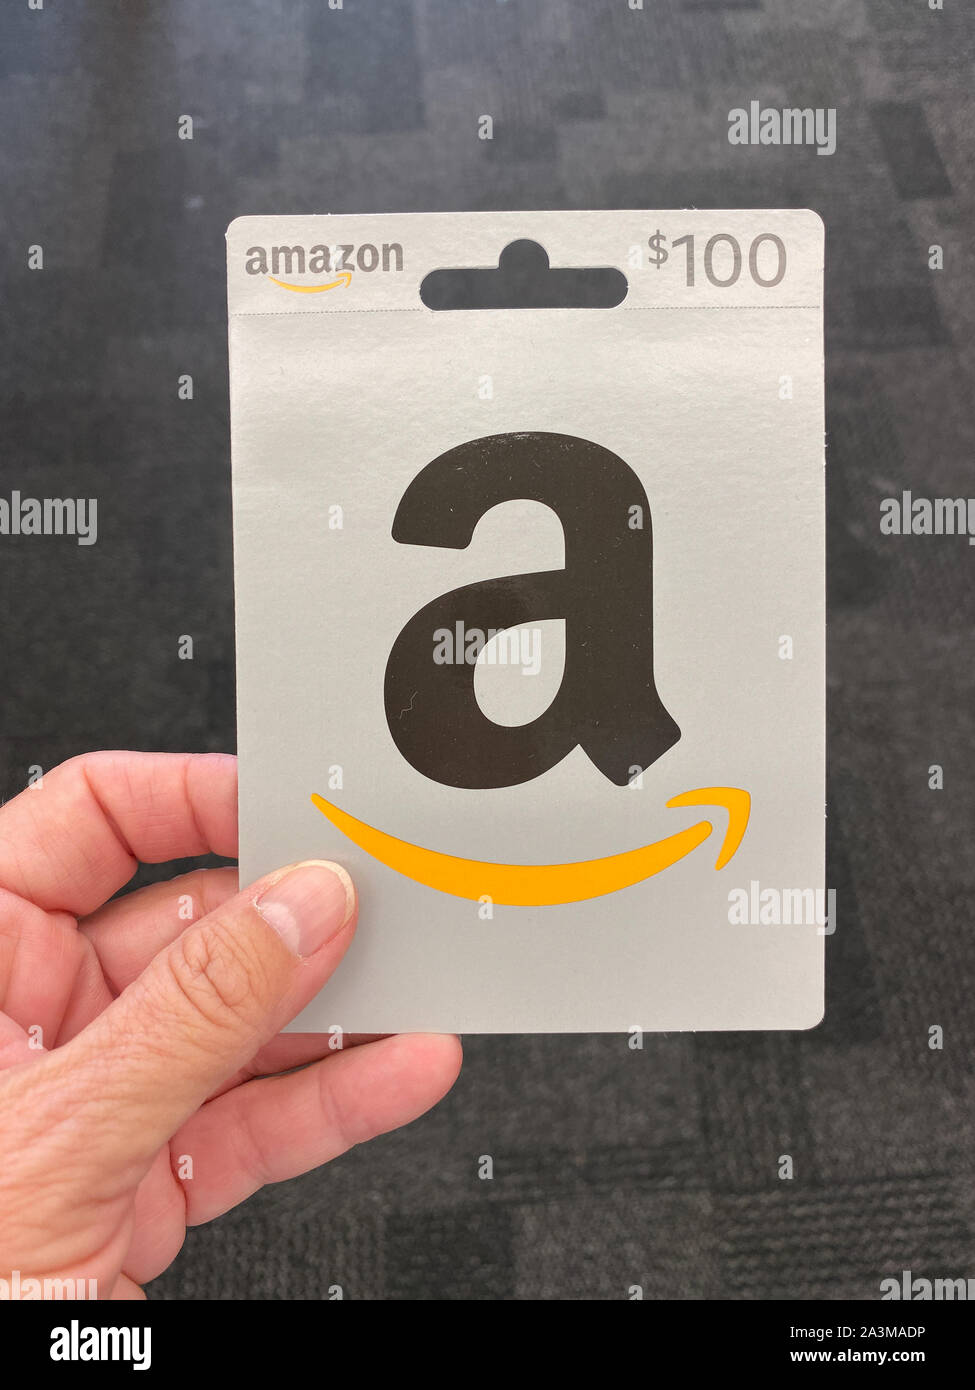 Orlando,FL/USA-10/7/19: Un Amazon dono carta pronti per una persona di  acquisto come il regalo perfetto per un familiare o un amico Foto stock -  Alamy